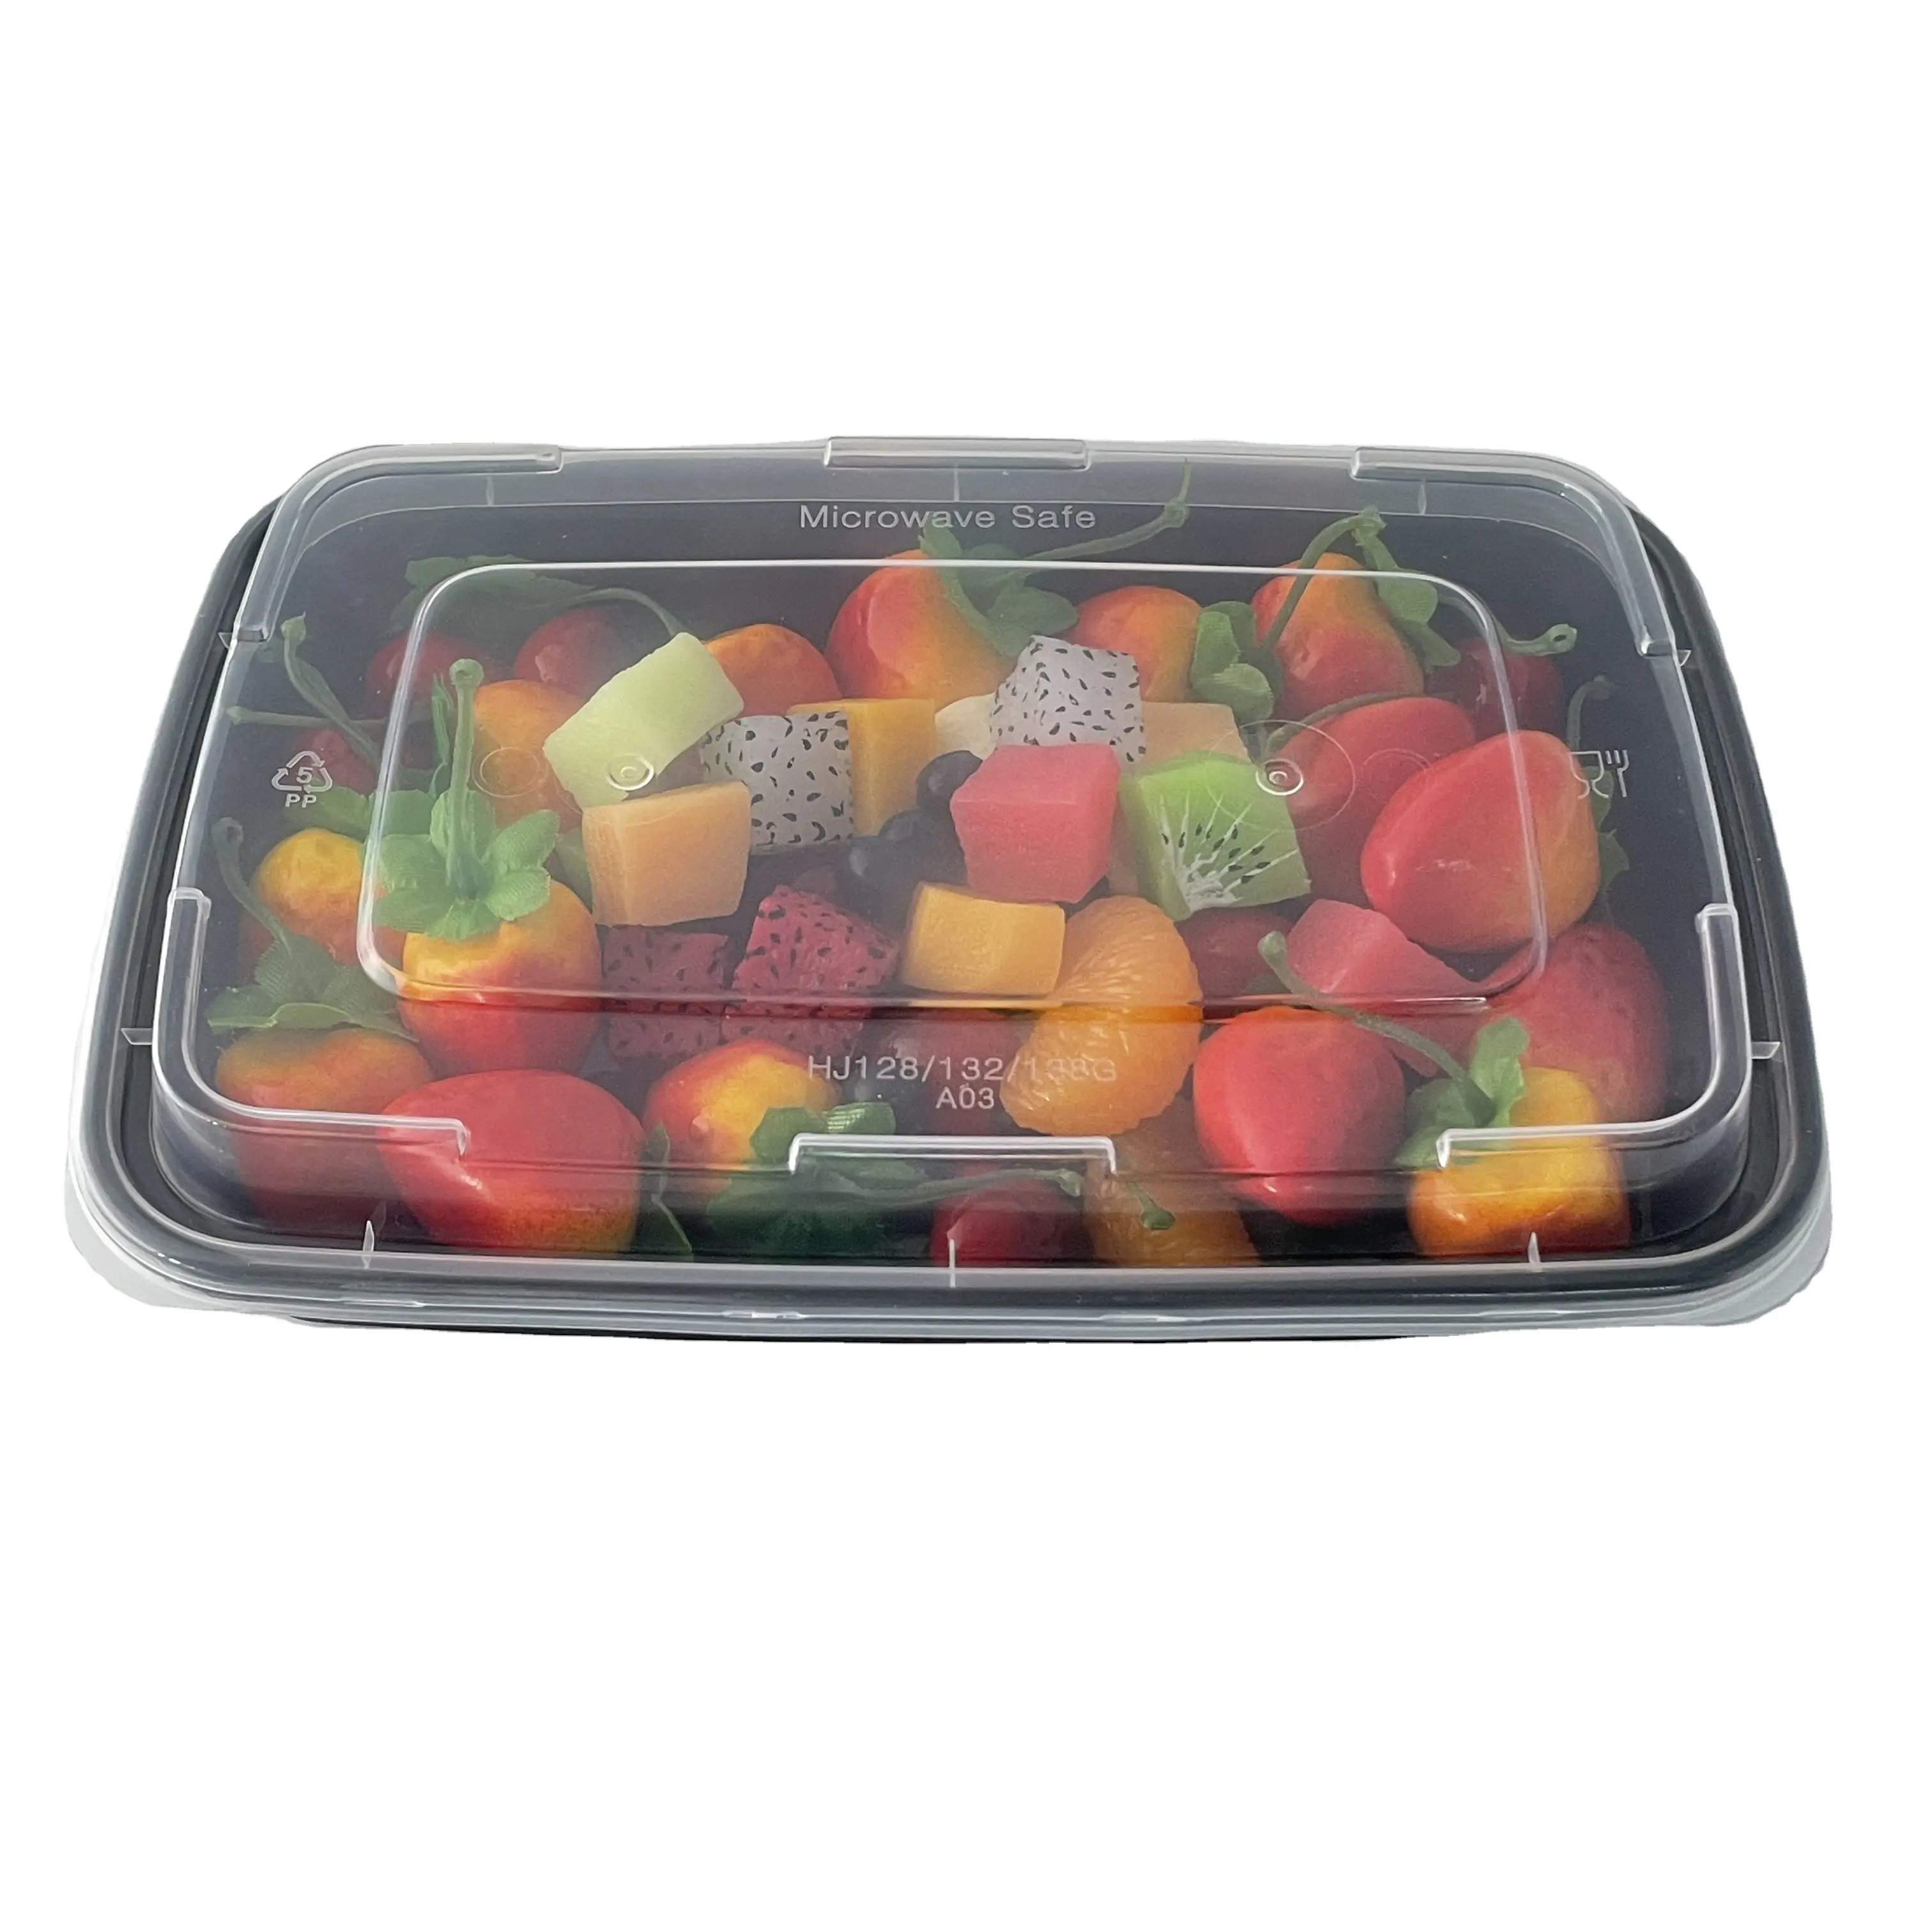 Lebensmittel-Speicherbehälter versiegelt Picknick Snack-Schachteln Schnellimbiss PP mit Deckel Packboxen Deli Bento zum Mitnehmen Mittagessen